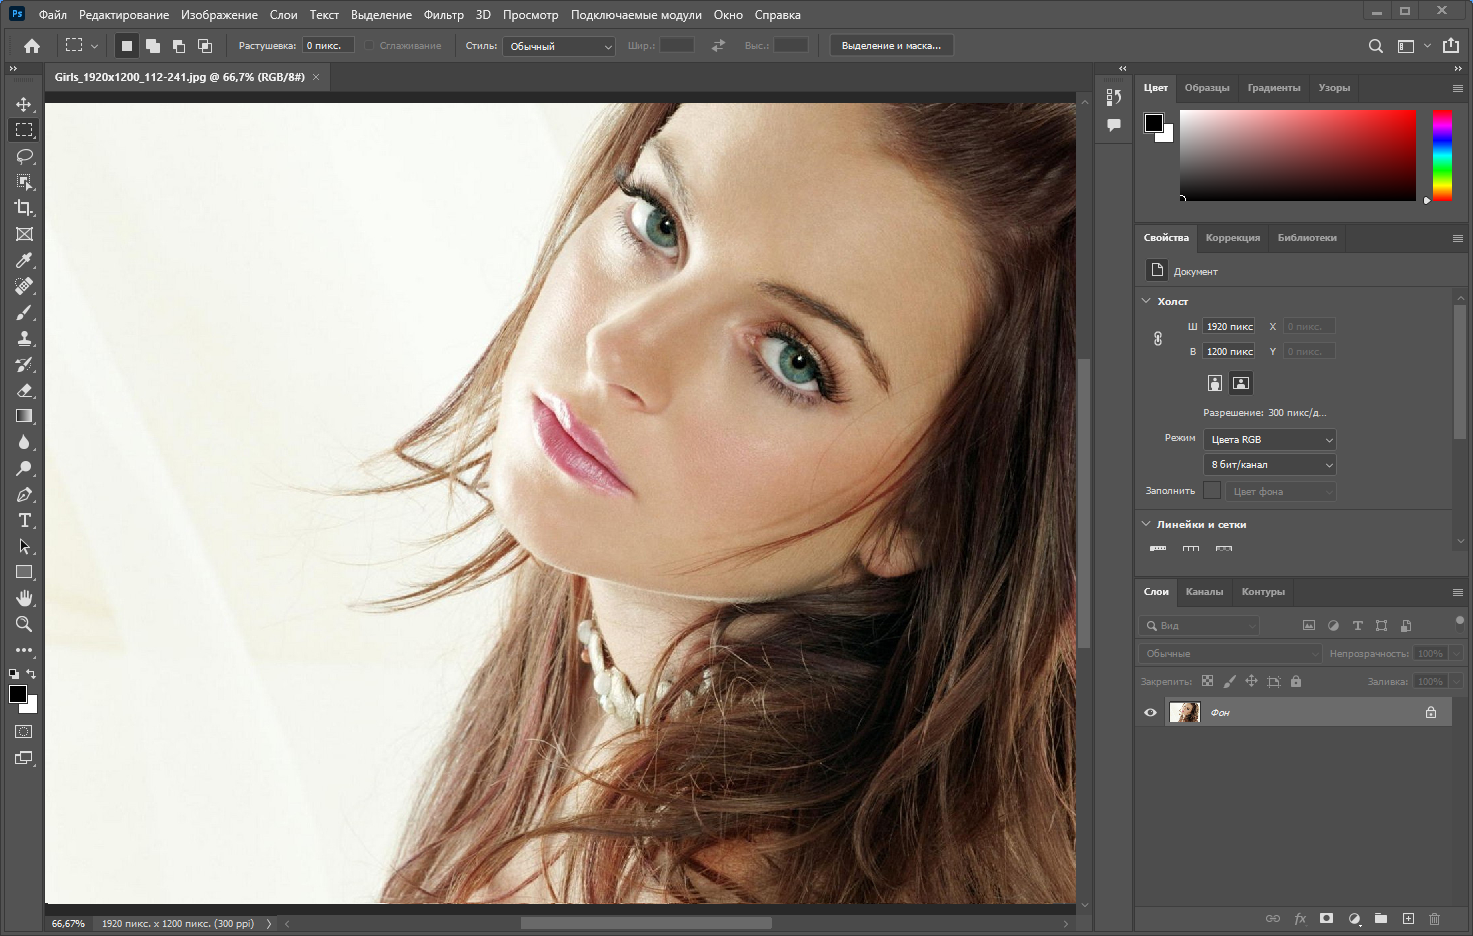 Adobe Photoshop 2022 23.2.0.277 RePack by KpoJIuK [Multi/Ru]